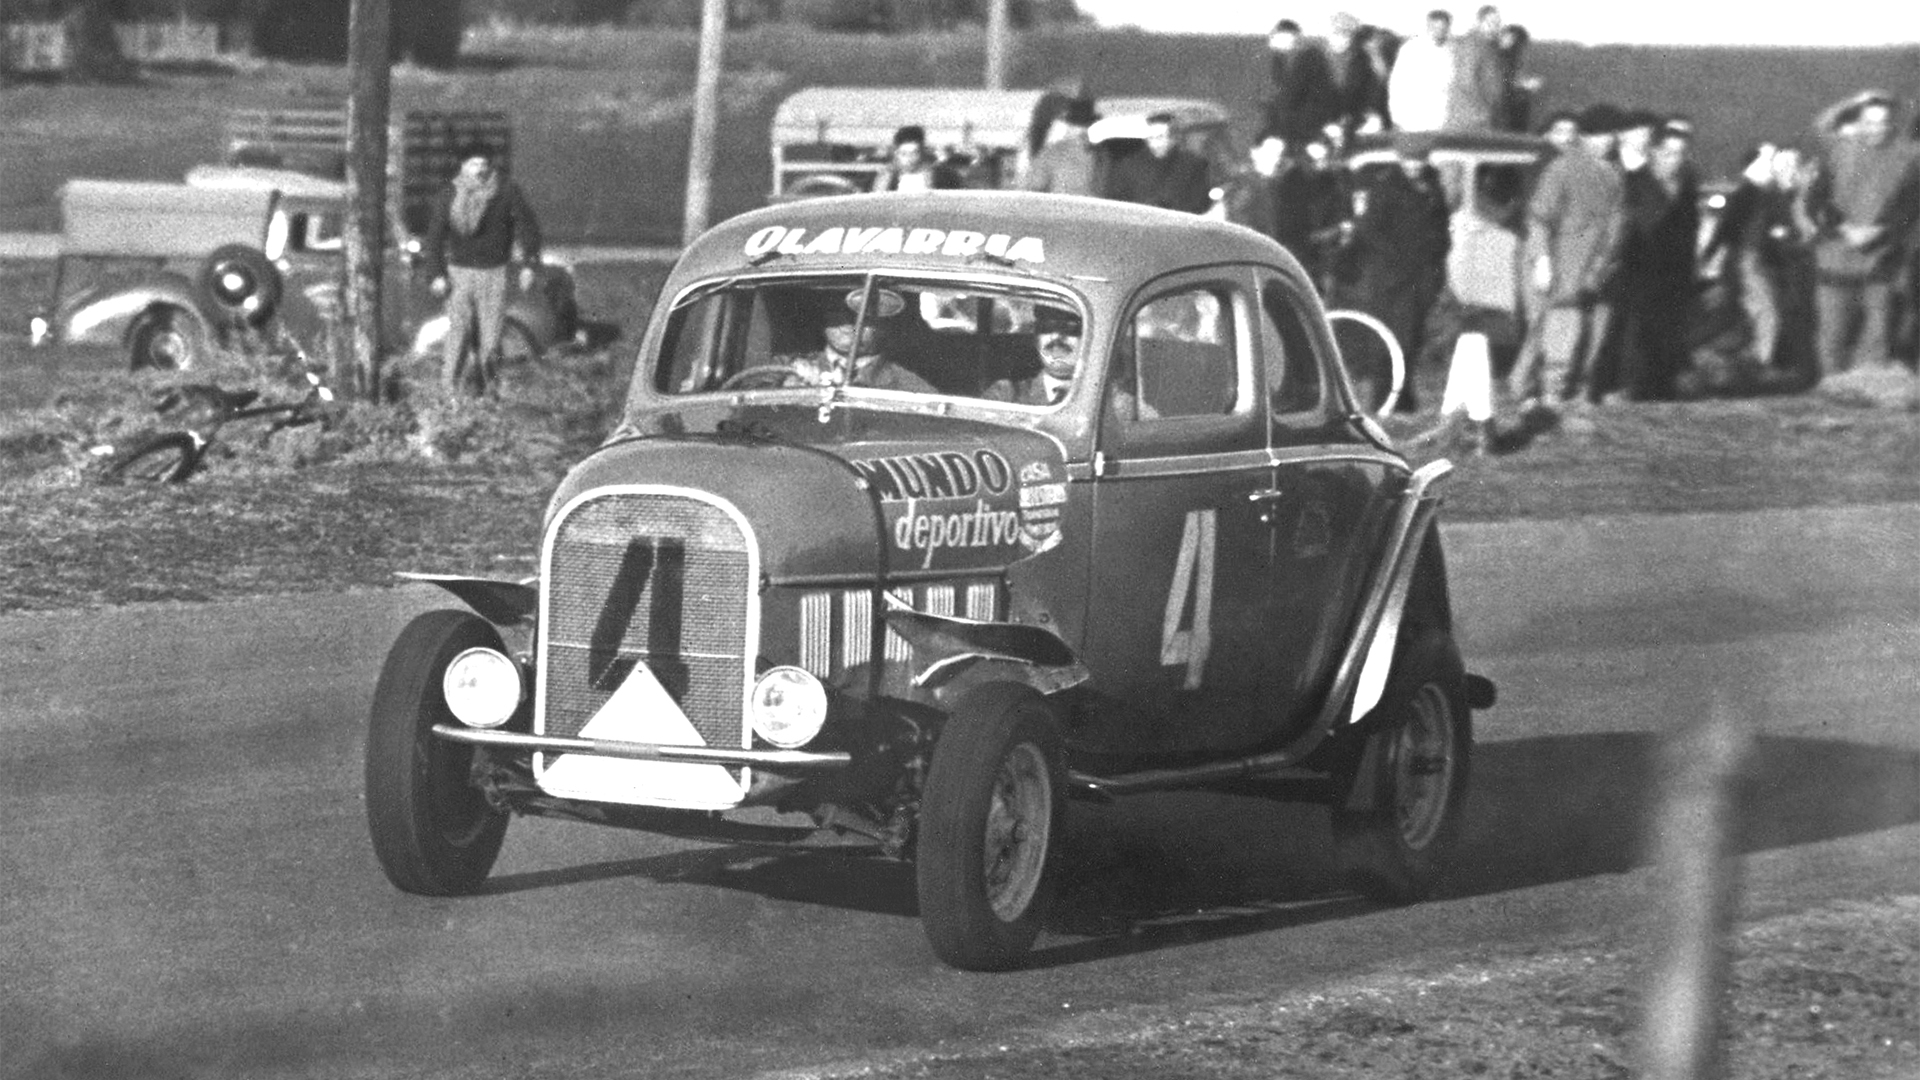 Los hermanos Dante y Torcuato Emiliozzi ganando su primer carrera de Turismo Carretera en 1953, con la galera Ford que tenía todavía el volante a la derecha a pesar del cambio de circulación que estaba vigente desde 1945 en Argentina